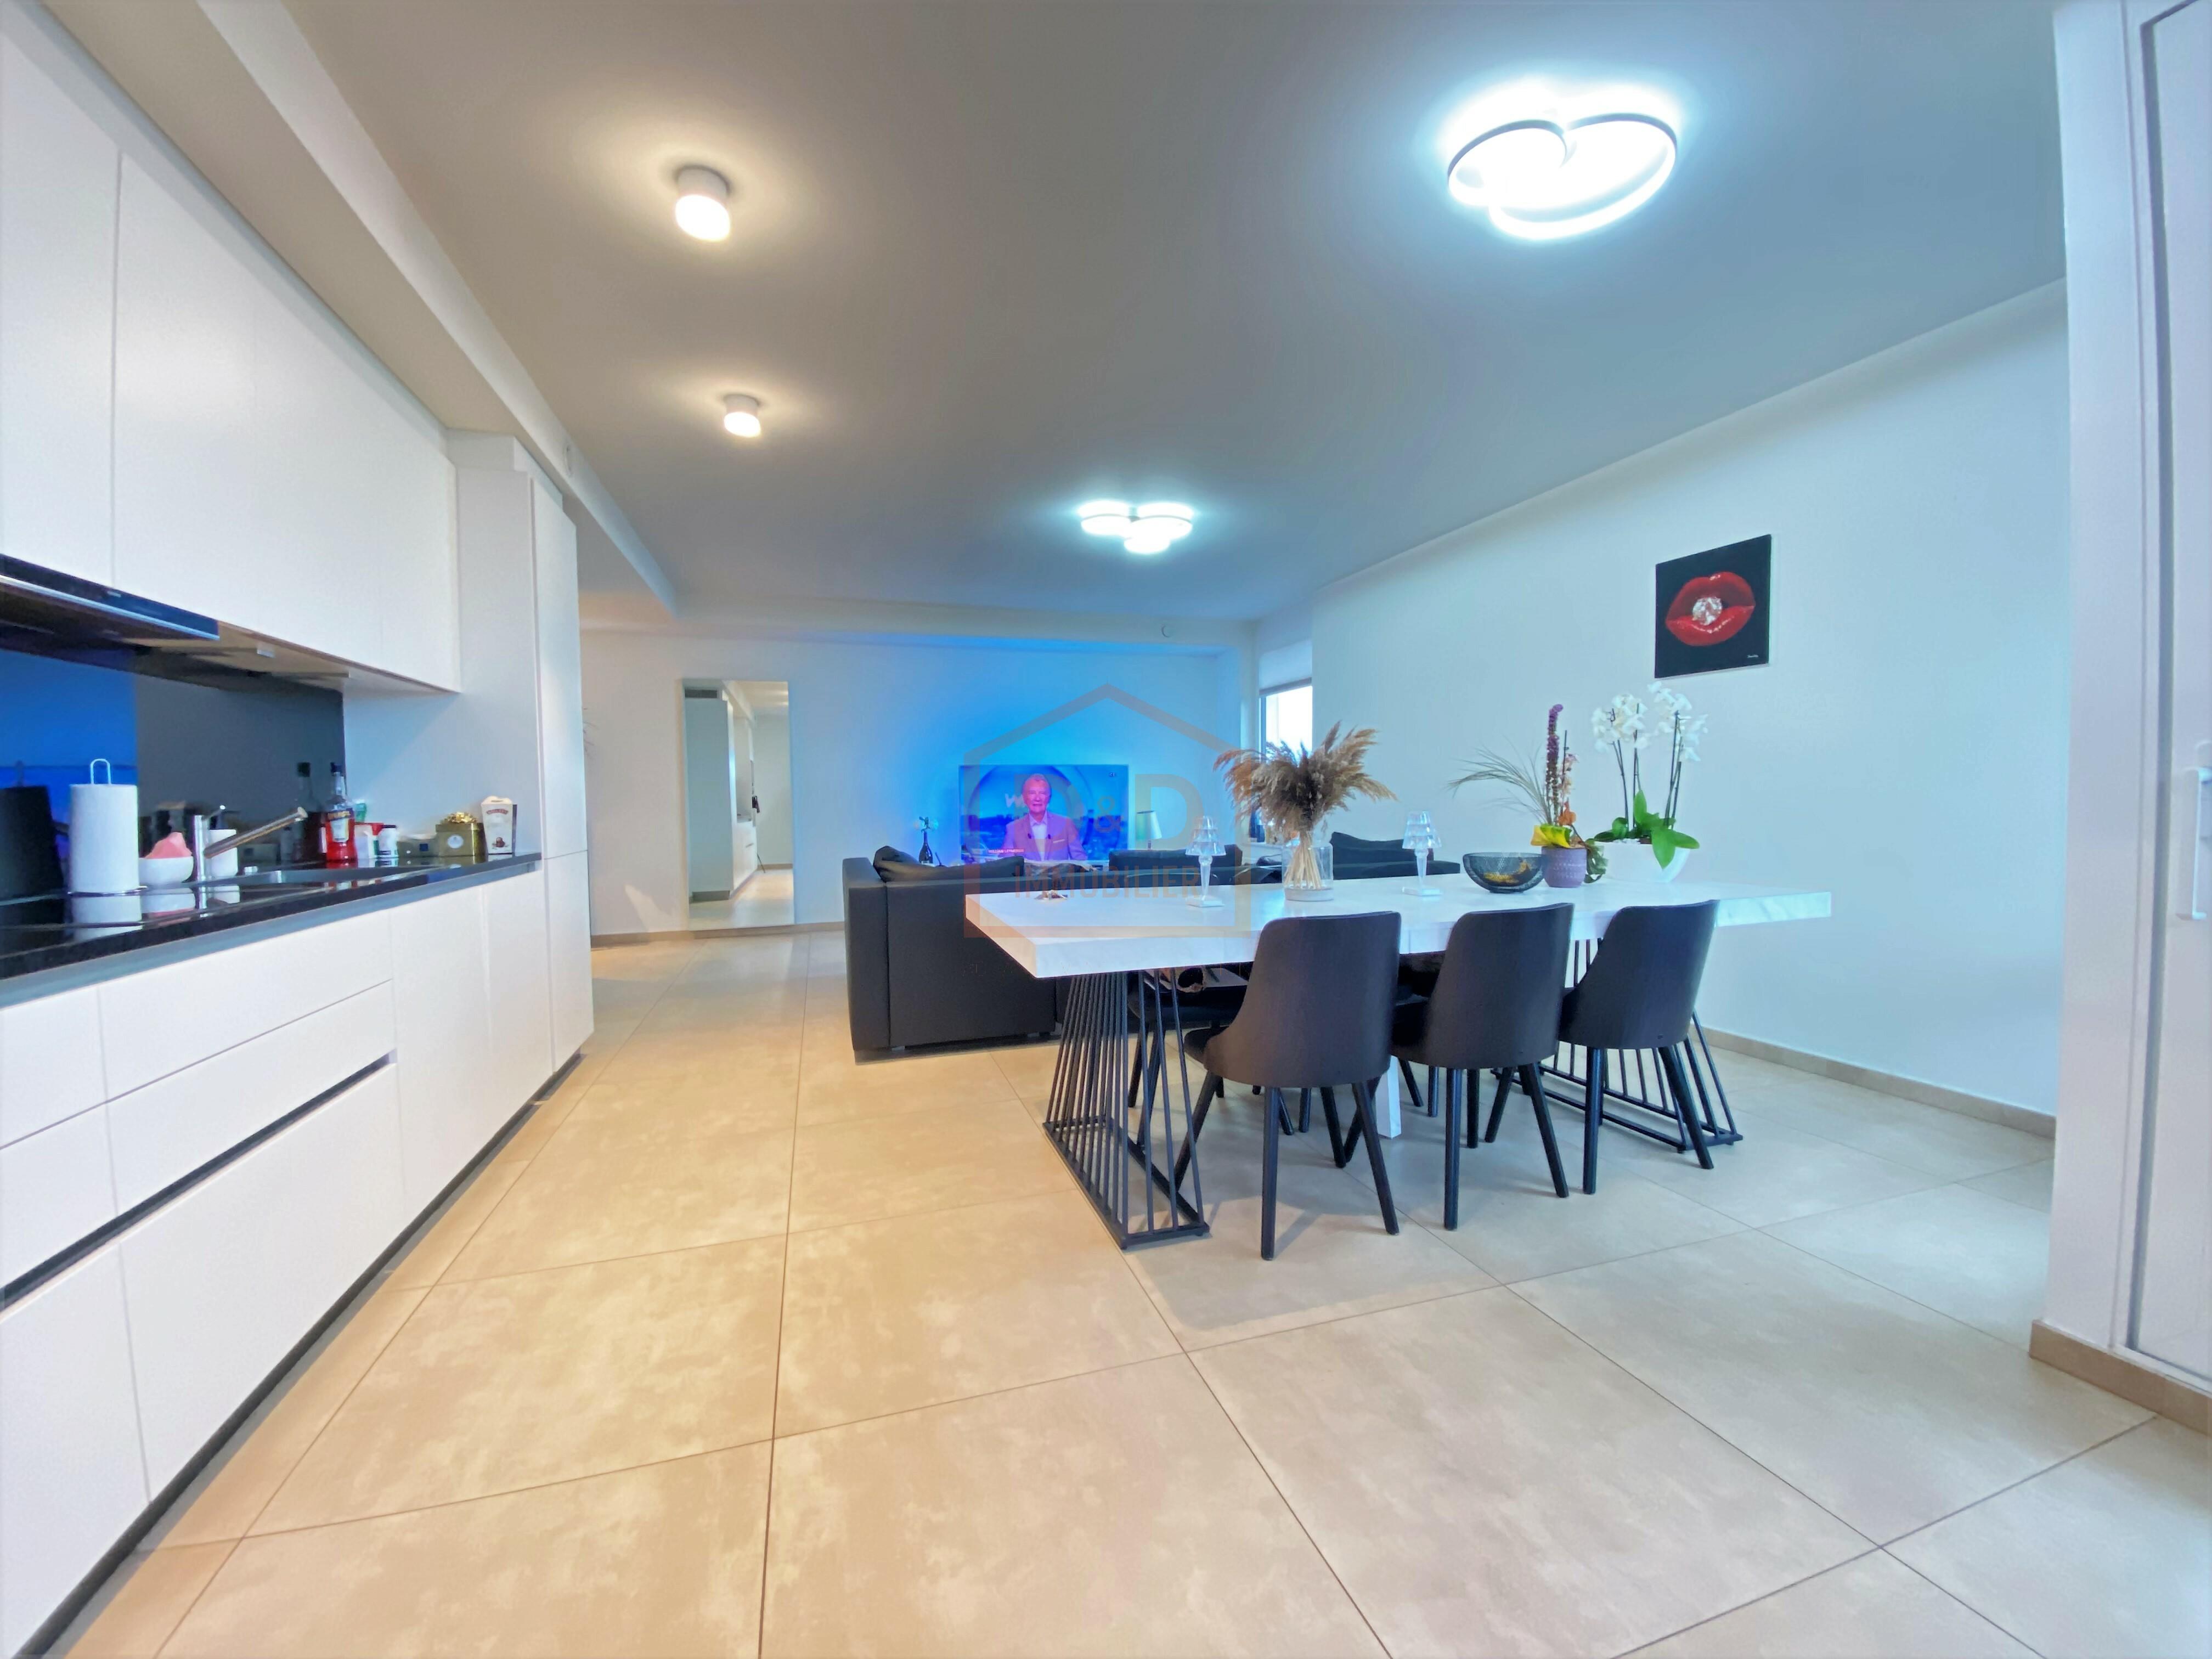 Appartement à Sanem, 65 m², 1 chambre, 1 400 €/mois